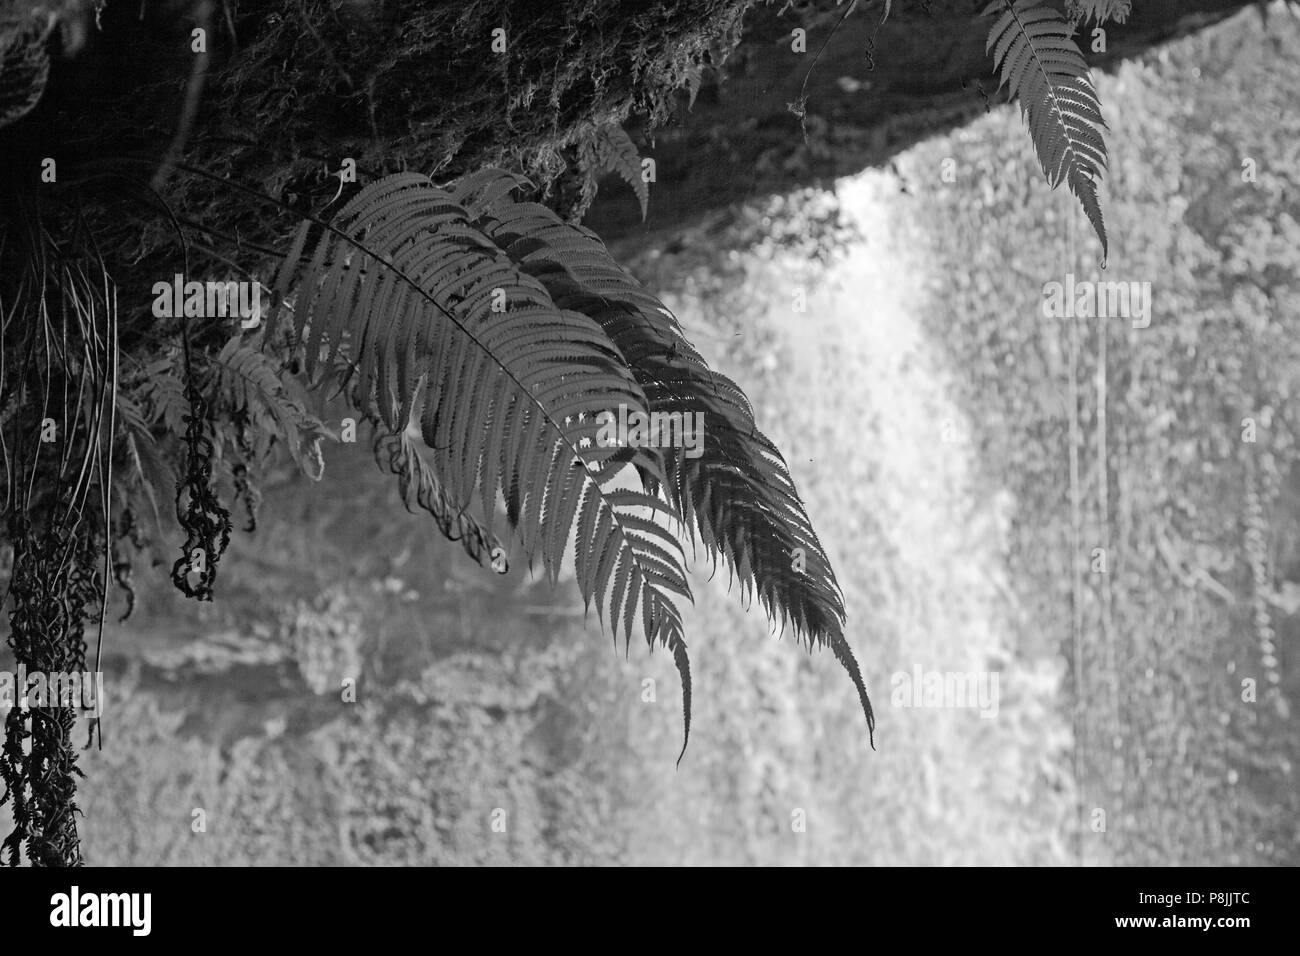 Les fougères poussent sous les CHAMPEE s itué sur la cascade PLATEAU DES BOLAVENS près de Pakse, LAOS DU SUD - Banque D'Images